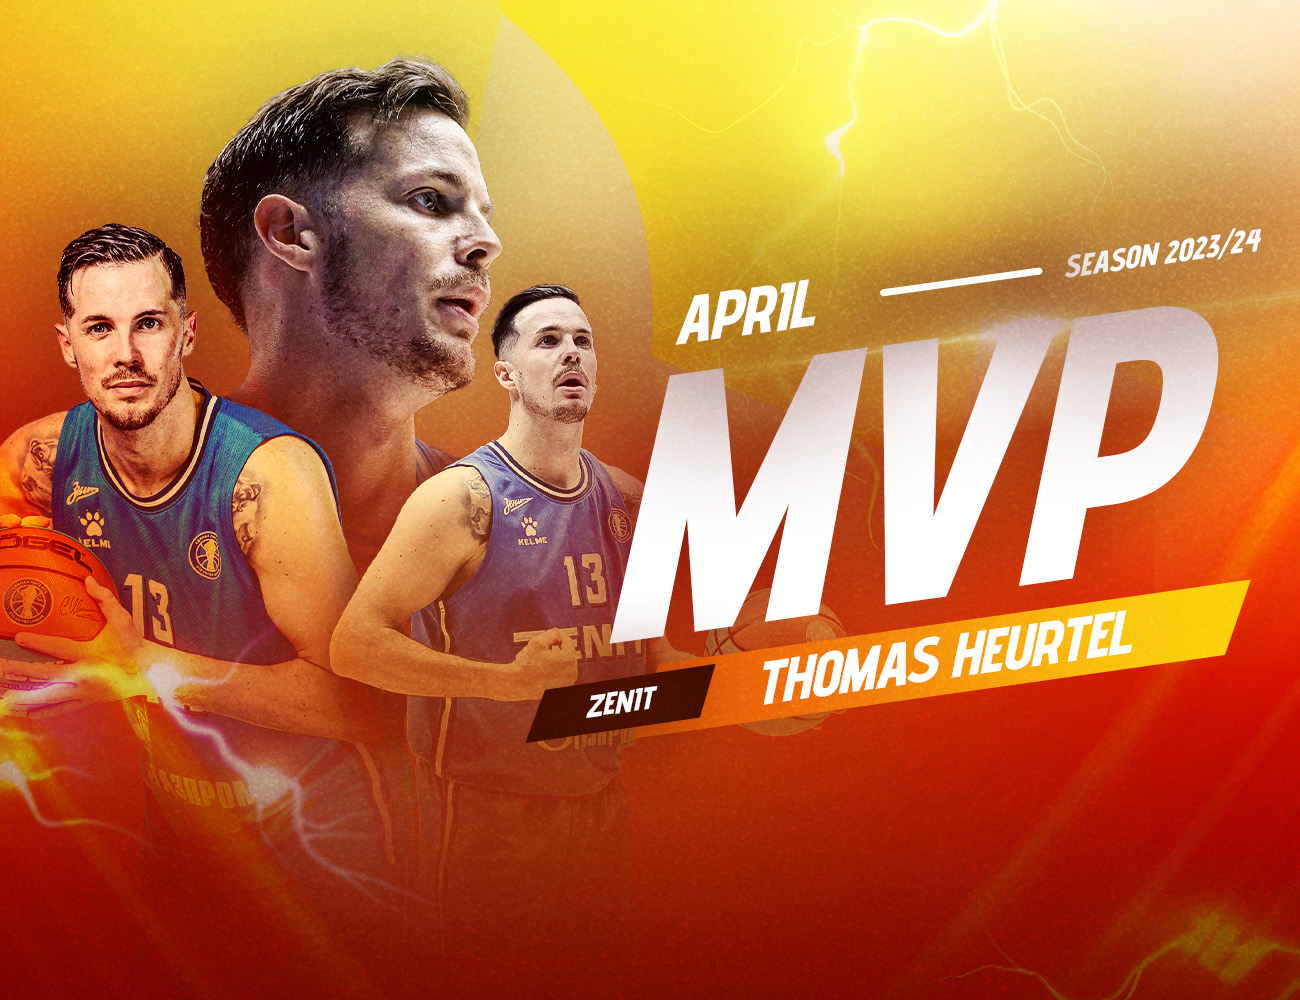 Thomas Heurtel is the MVP of April